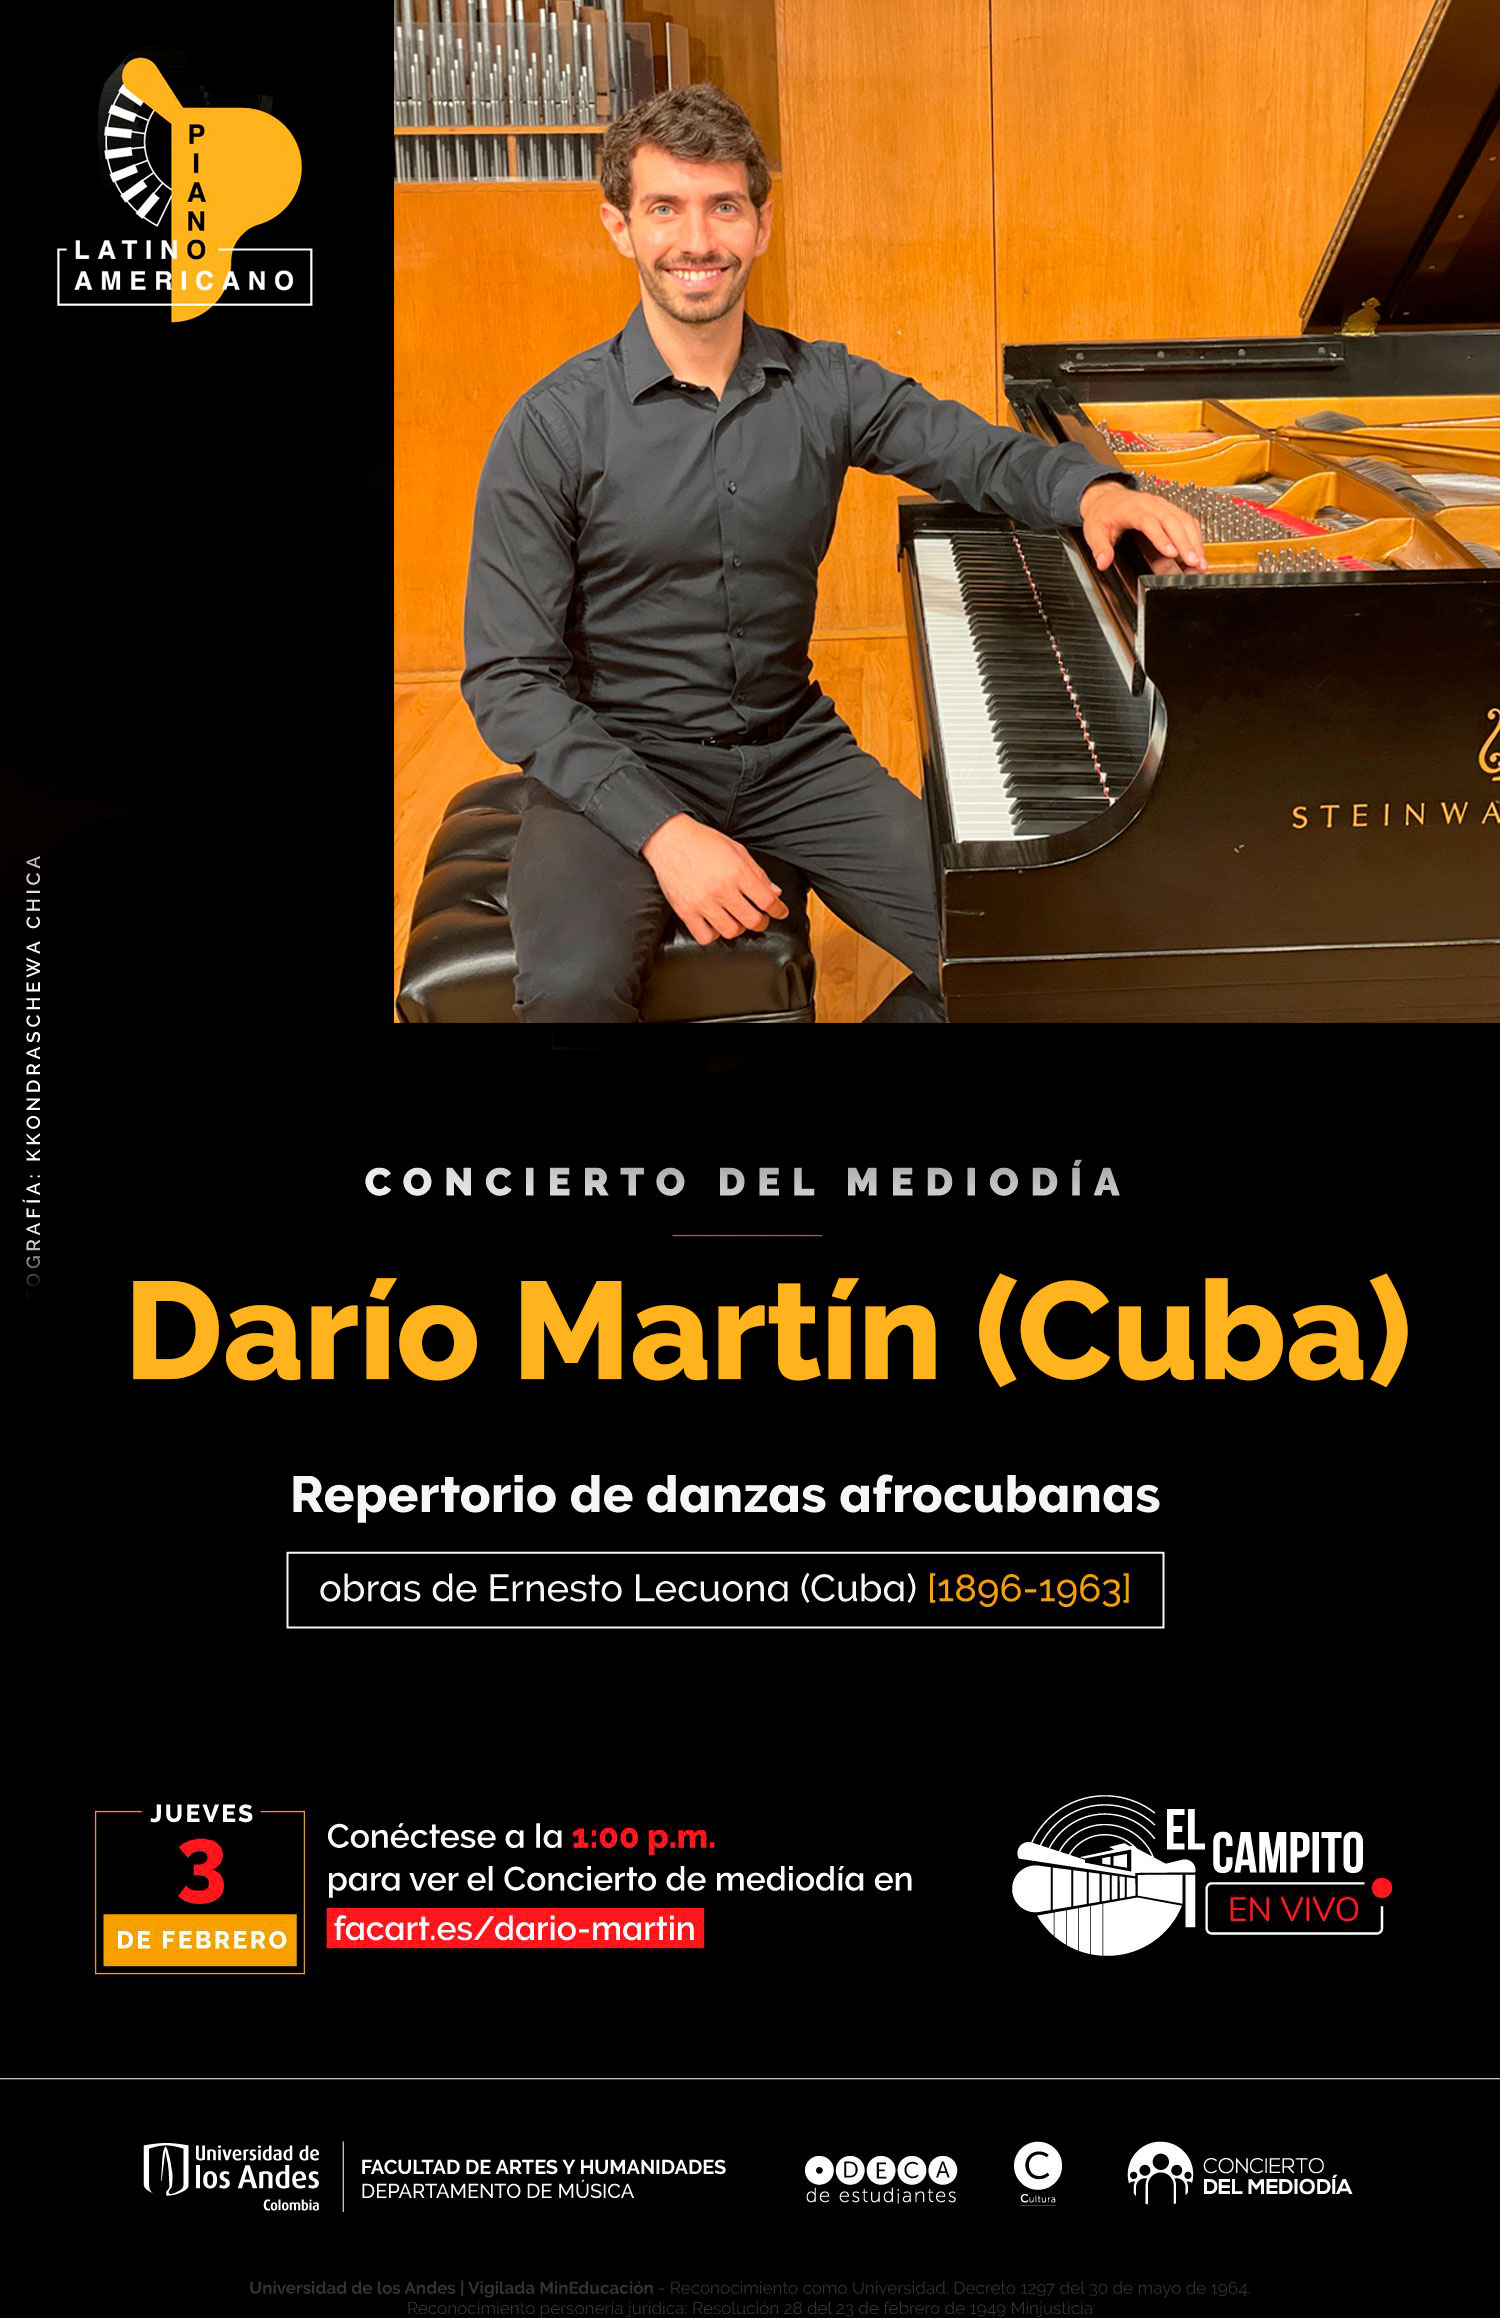 Concierto del mediodía | Mes del piano latinoamericano. Darío Martín (Cuba)